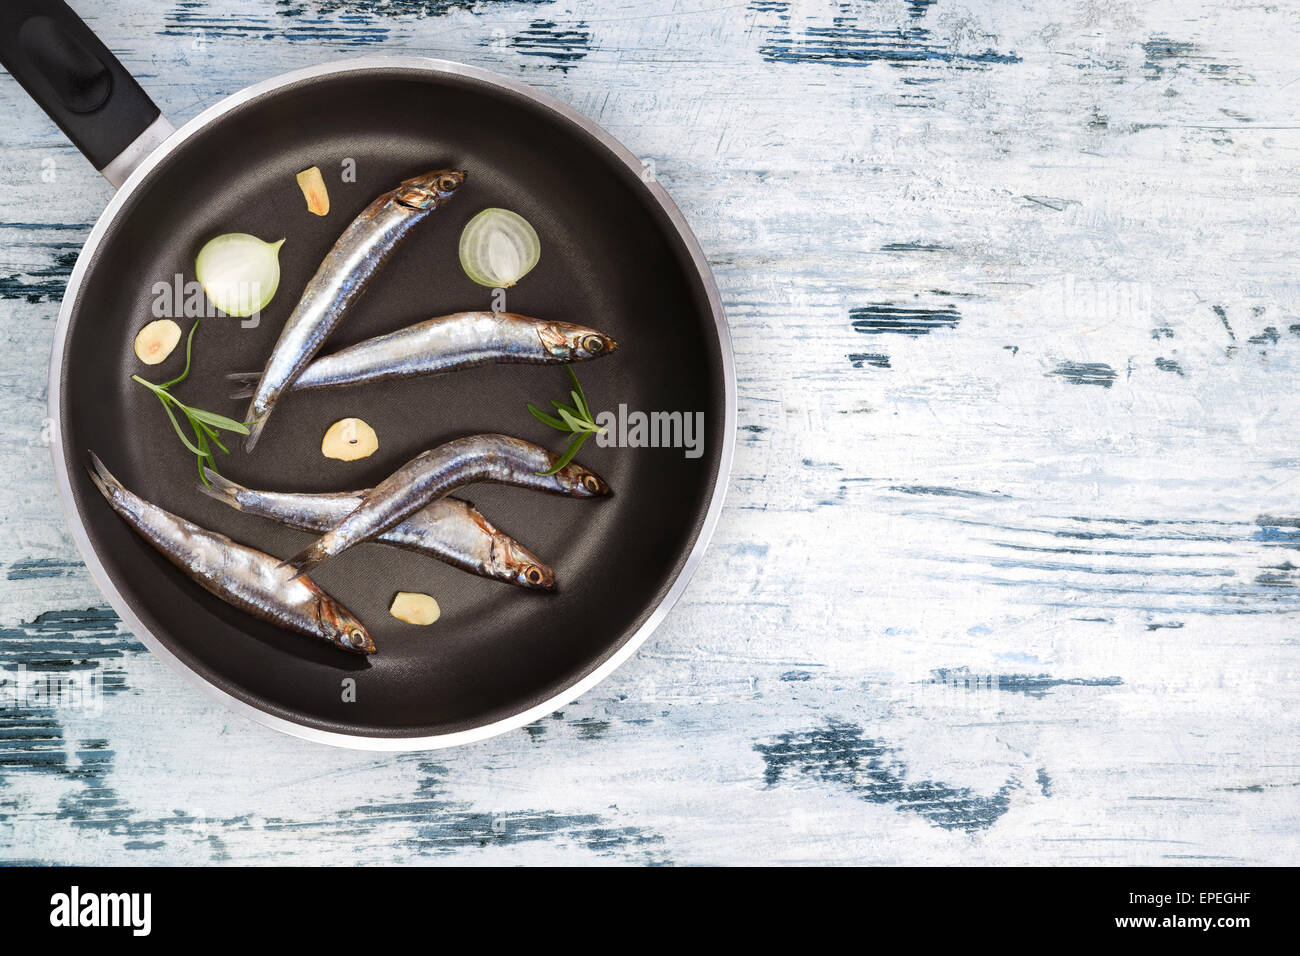 Manger des fruits de mer de la Méditerranée. Sardines fraîches sur pan noir sur blanc et bleu fond de bois texturé vue d'en haut. Fruits de mer Banque D'Images